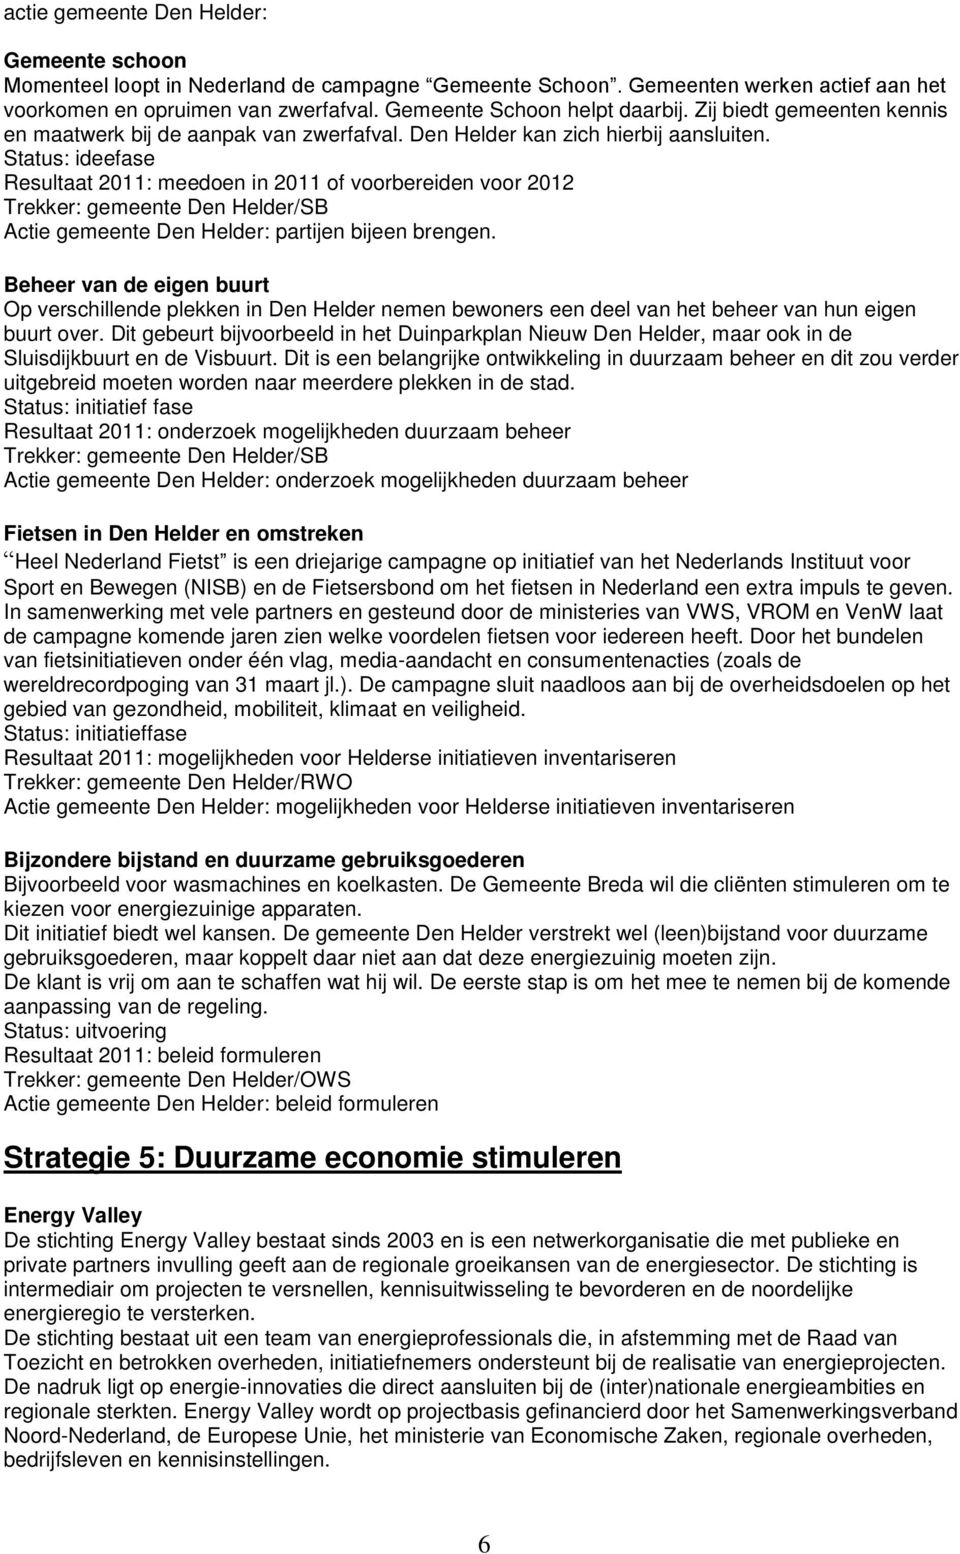 Status: ideefase Resultaat 2011: meedoen in 2011 of voorbereiden voor 2012 Actie gemeente Den Helder: partijen bijeen brengen.